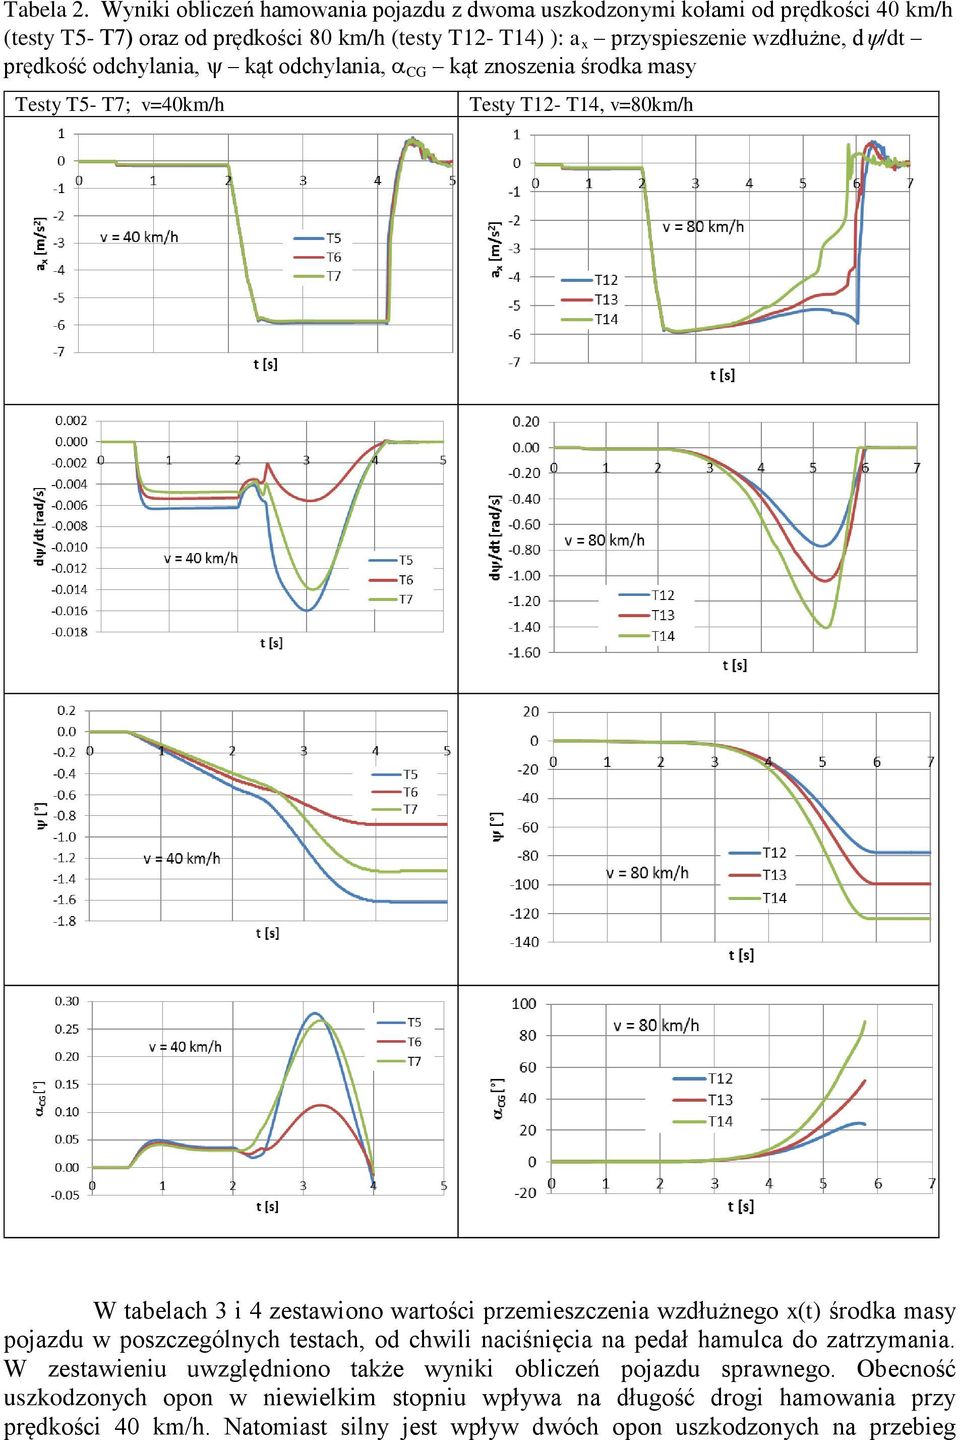 /dt prędkość odchylania, kąt odchylania, CG kąt znoszenia środka masy Testy T5- T7; v=40km/h Testy T12- T14, v=80km/h W tabelach 3 i 4 zestawiono wartości przemieszczenia